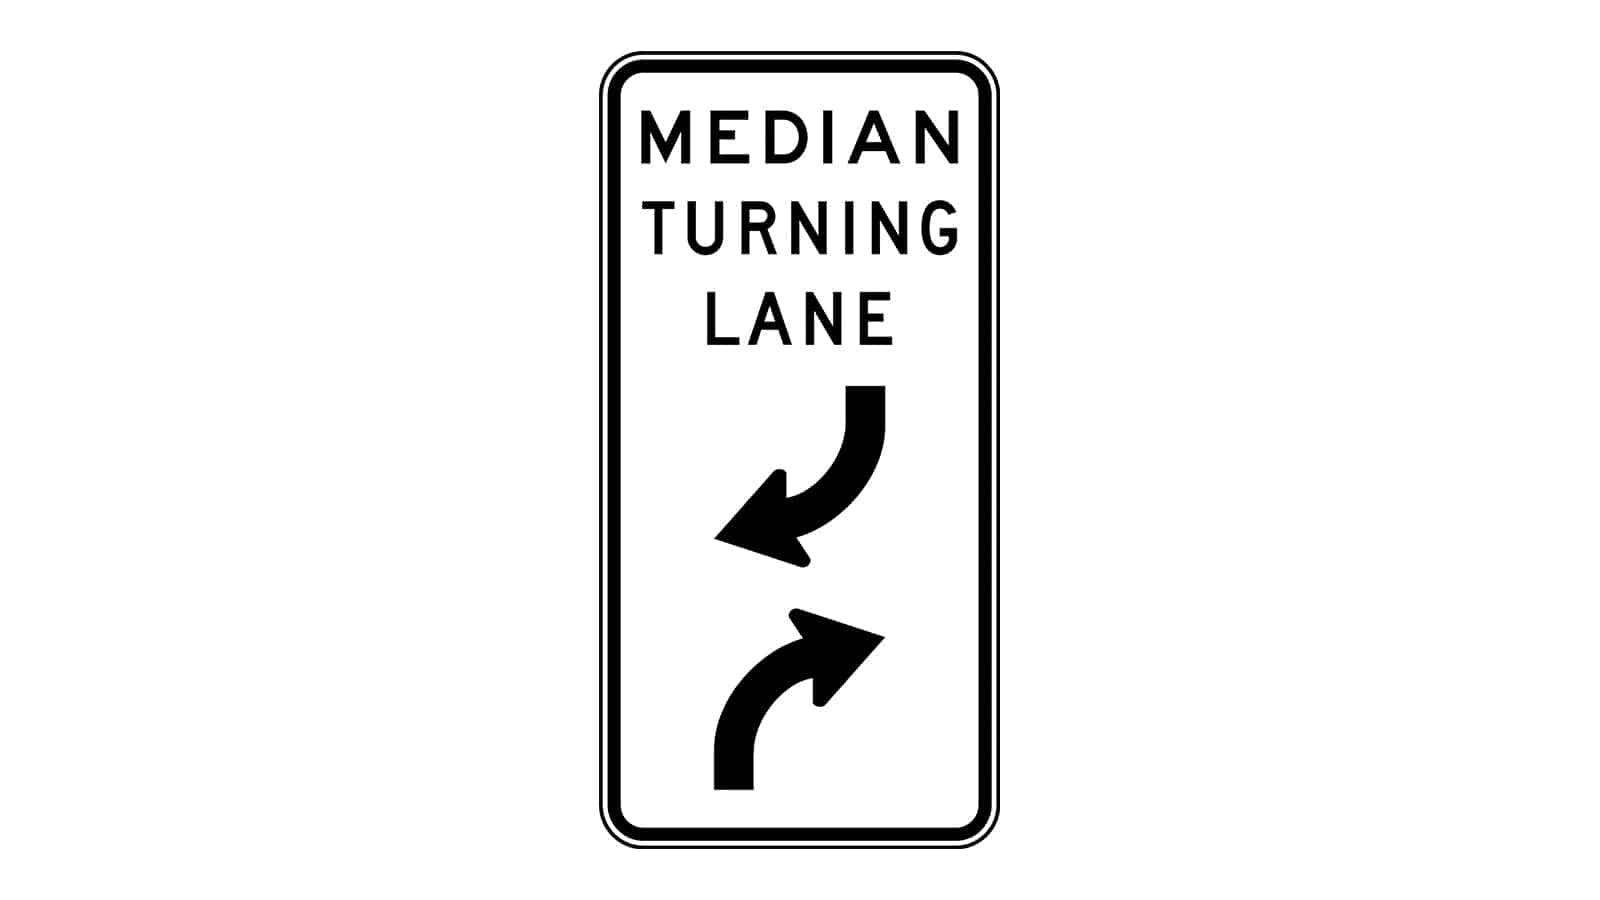 Median Turning Lane Sign